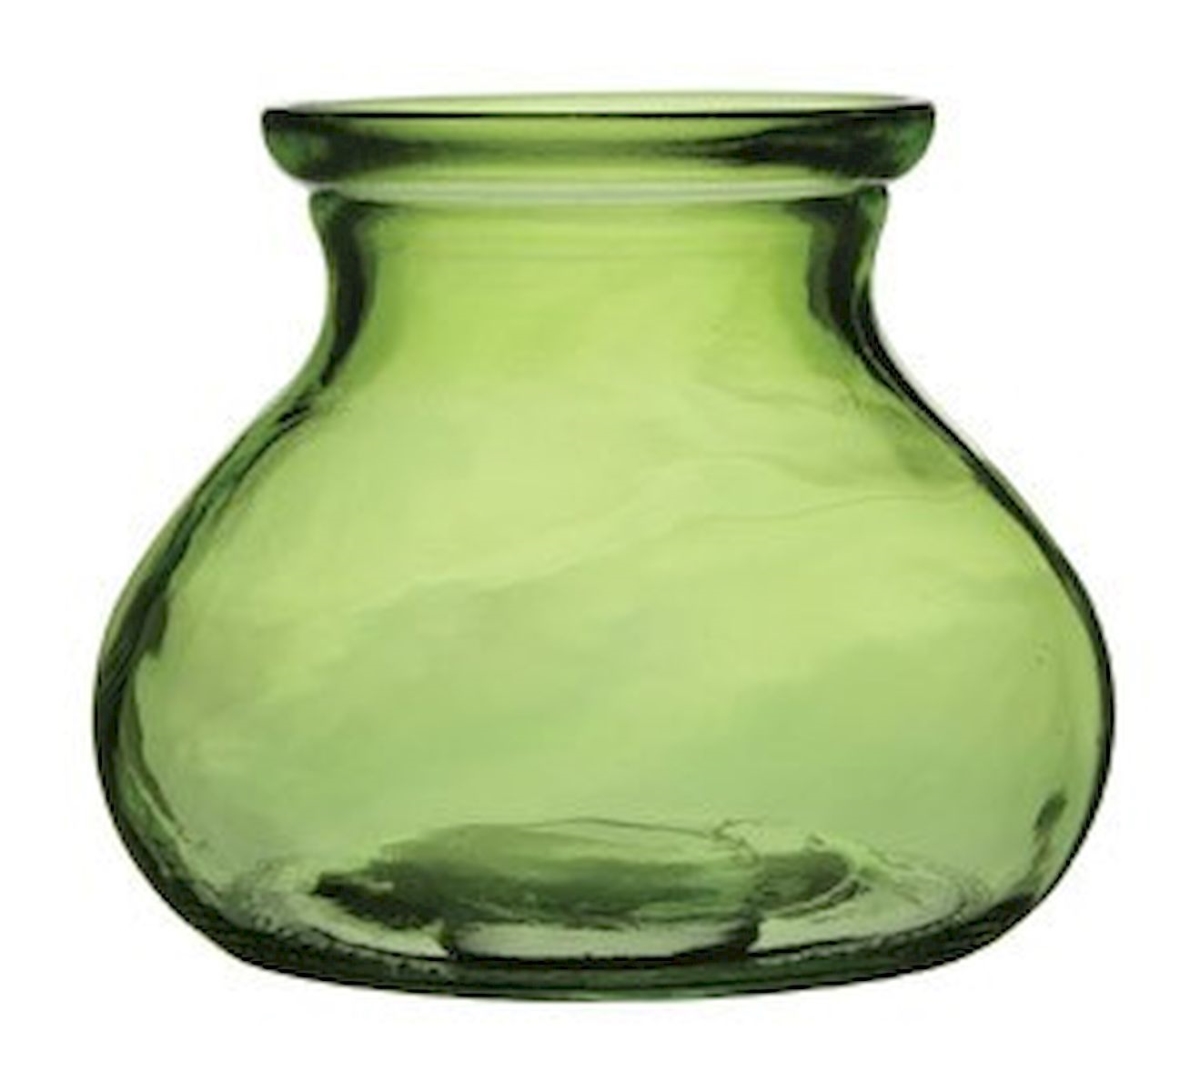 Picture of 212 Main AI-N3030GRE Rosie Posie Vintage Green Vase